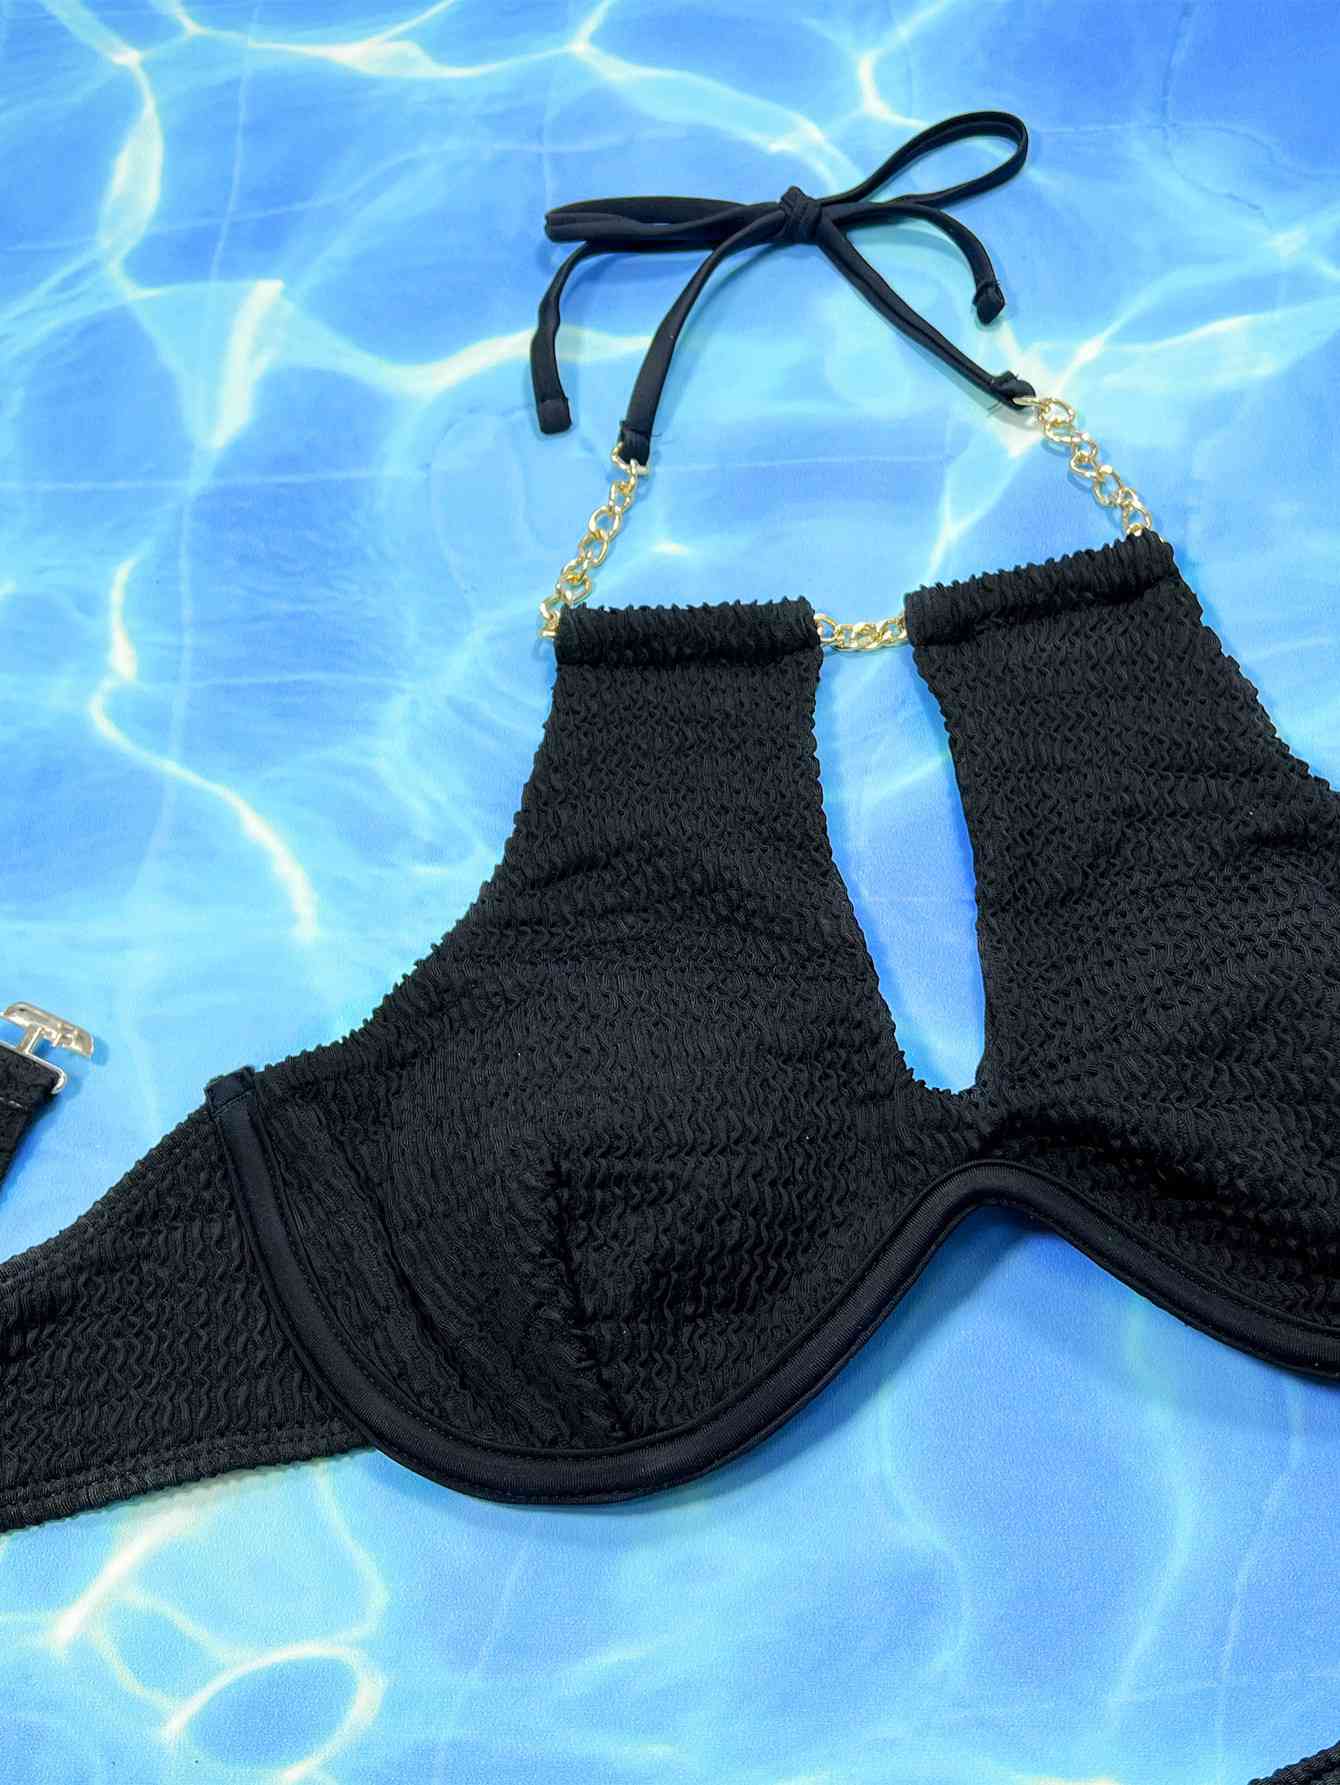 Halter Neck Chain Bikini Set